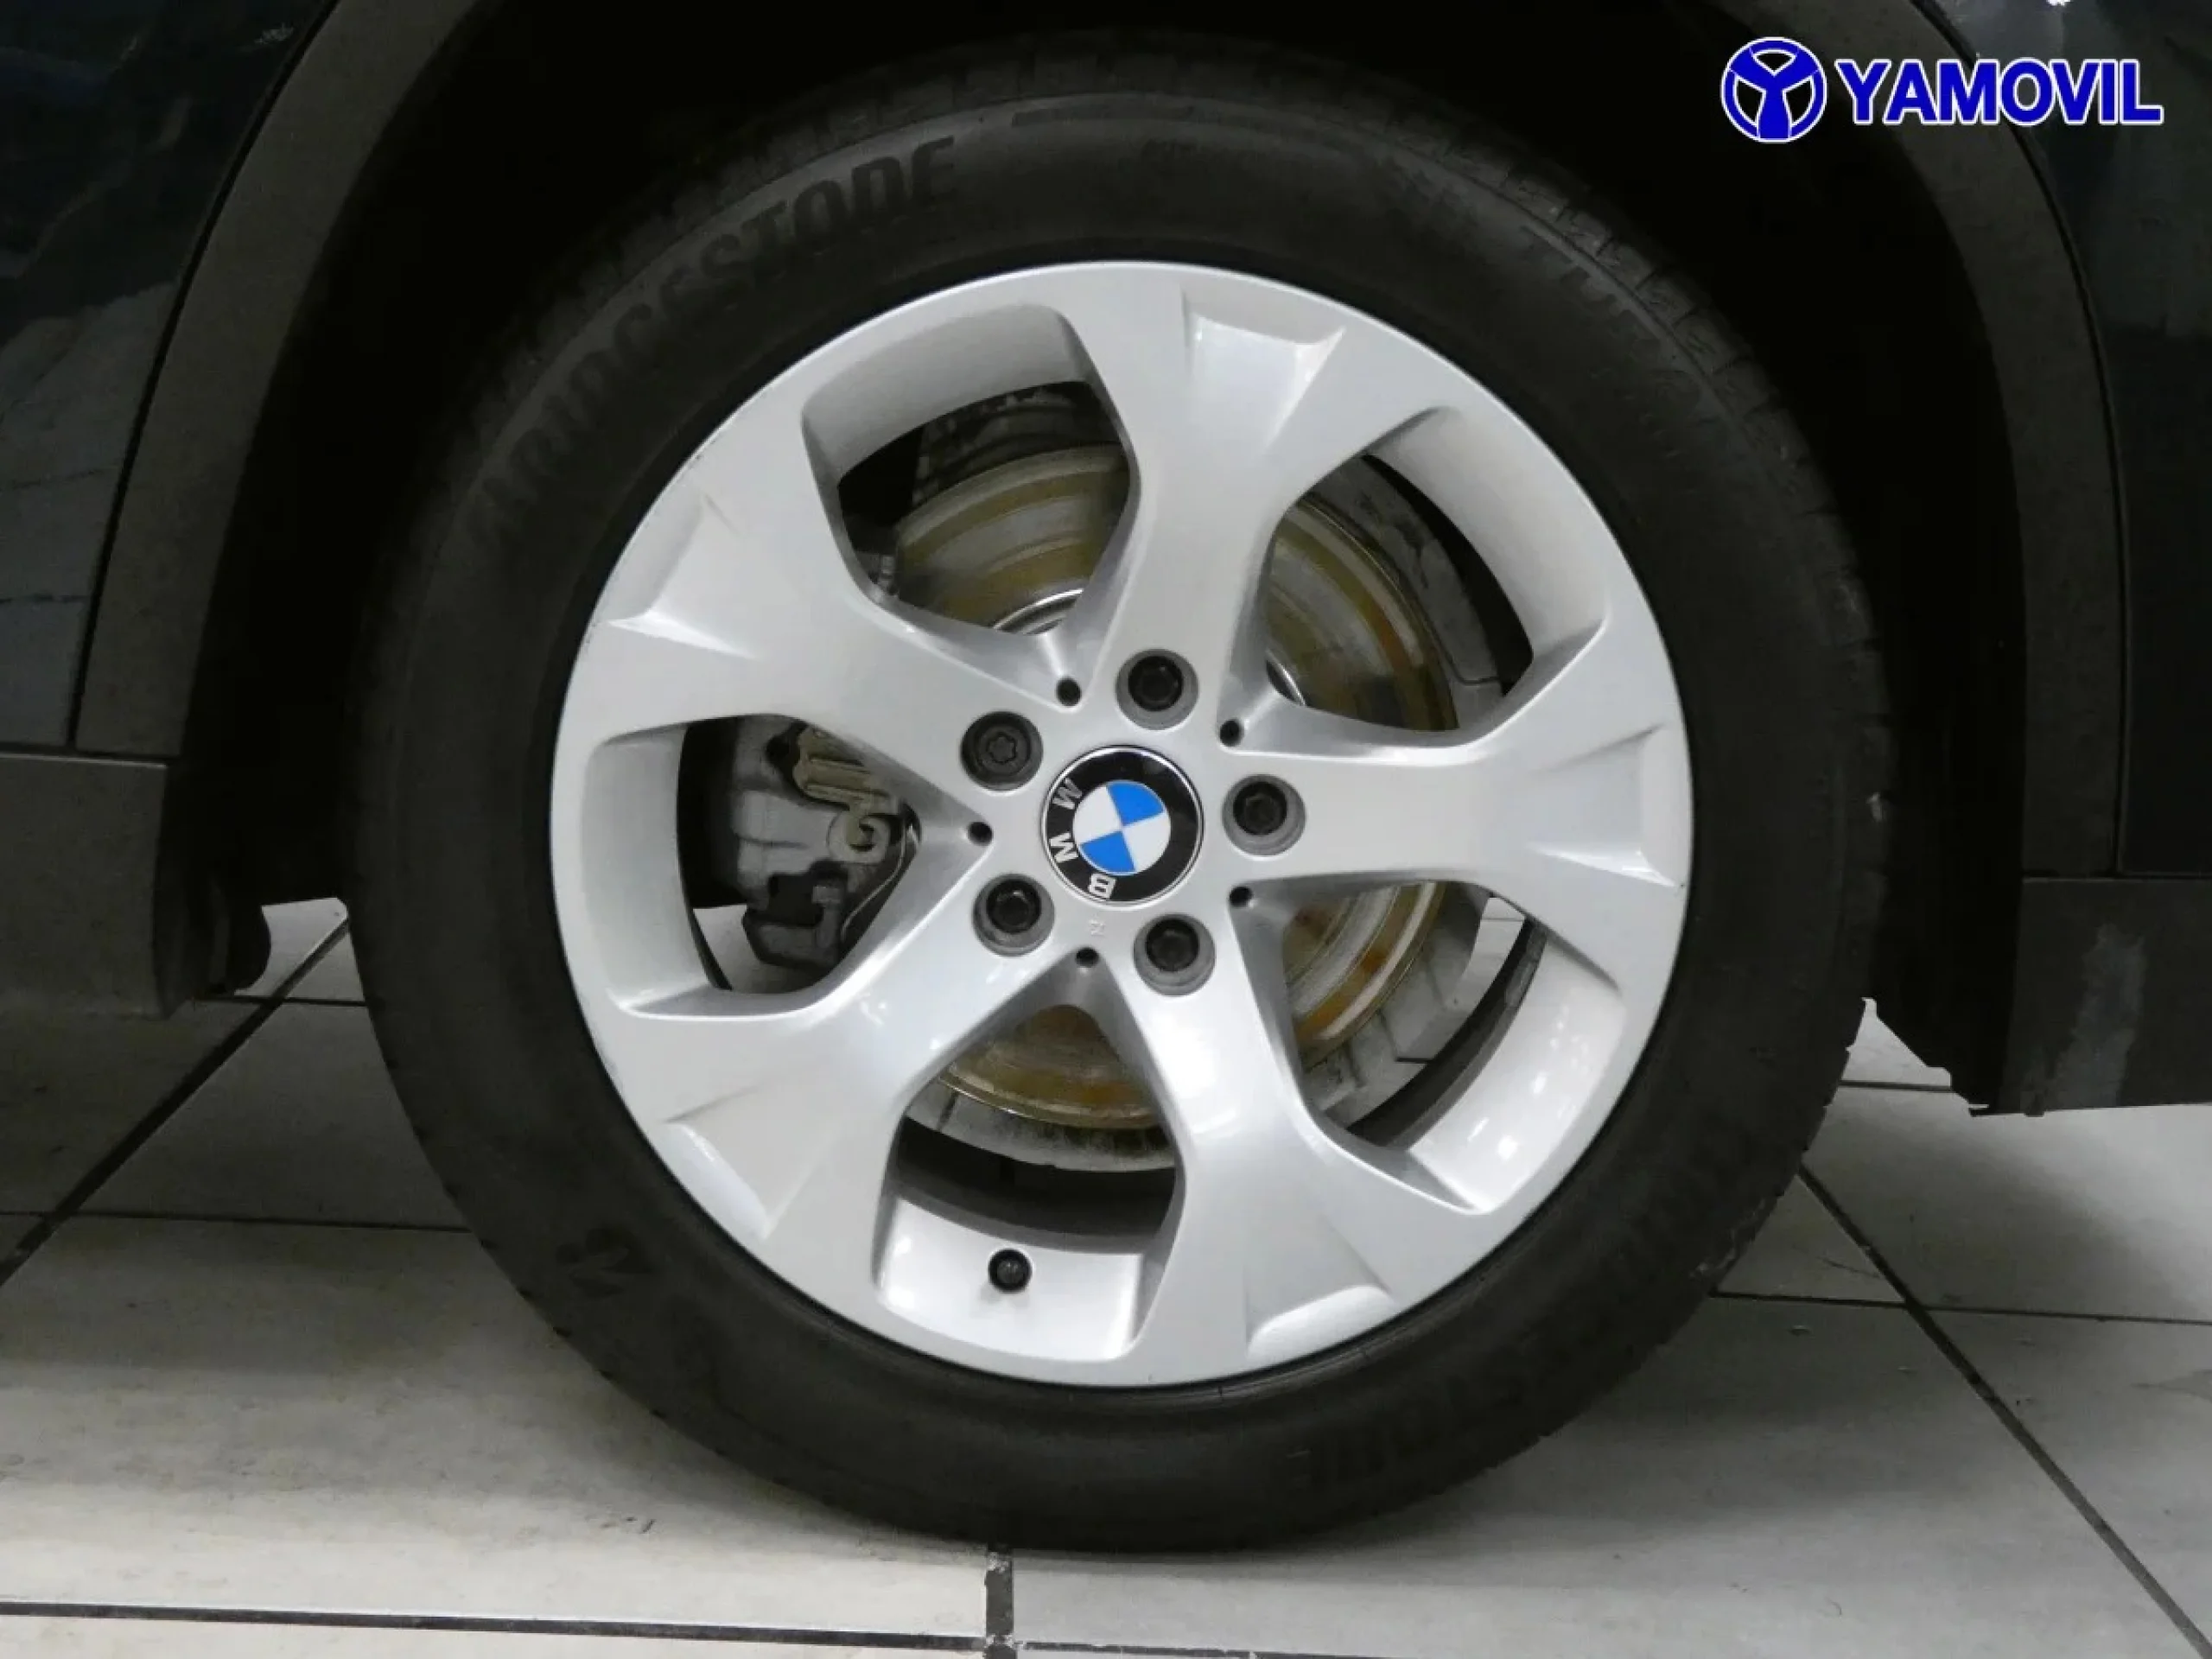 BMW X1 sDrive18d 105 kW (143 CV) - Foto 9